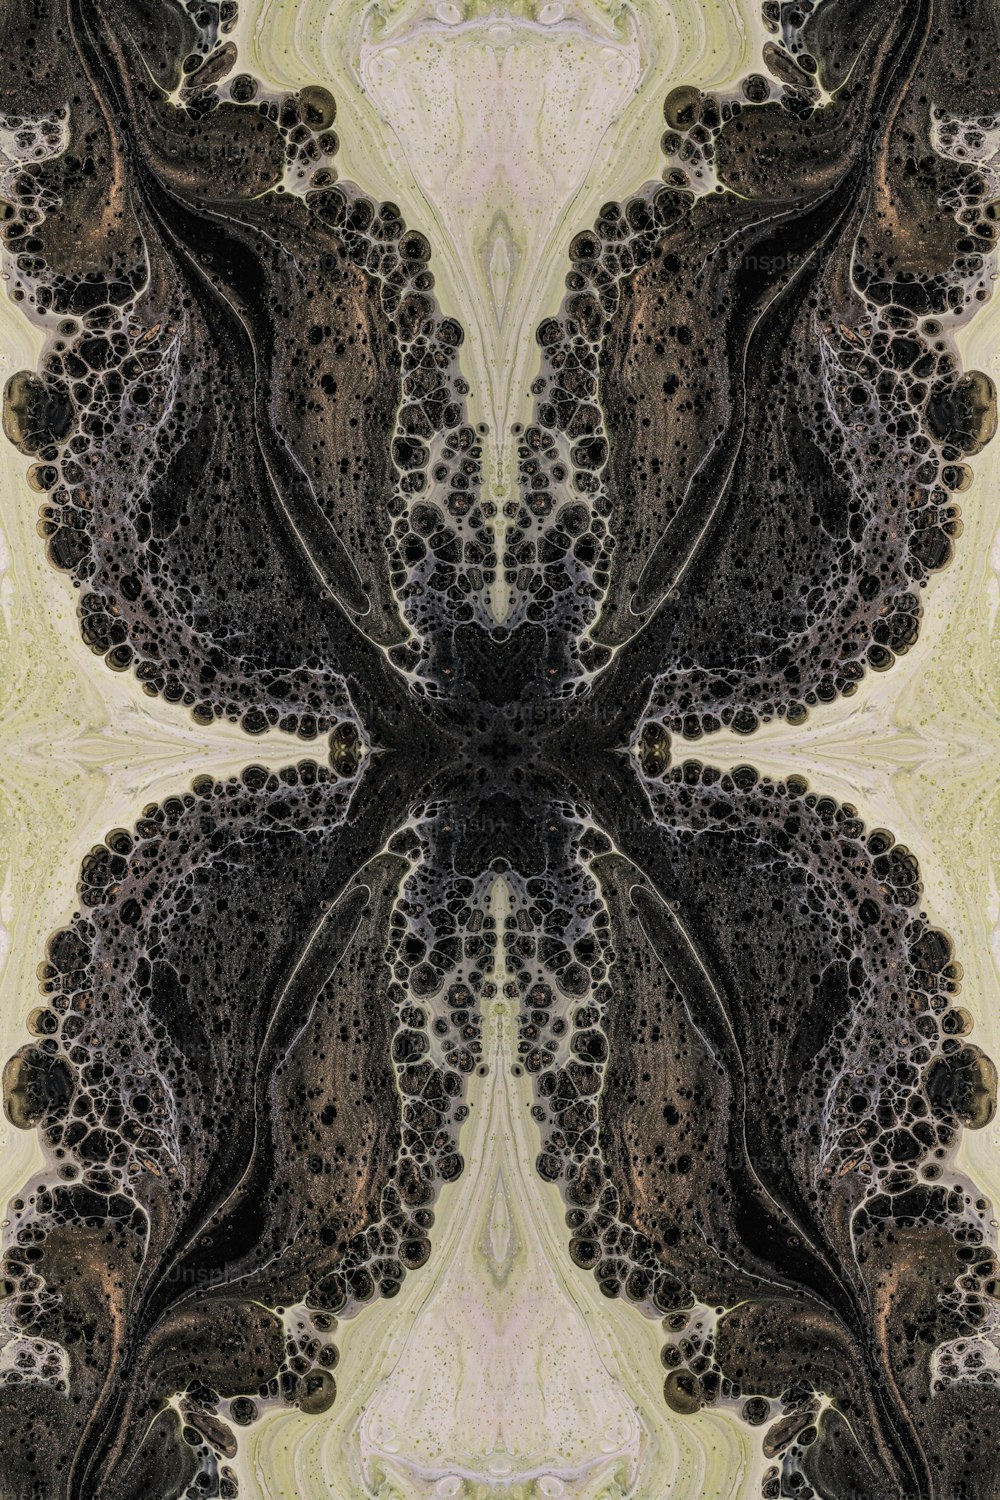 ein computergeneriertes Bild eines abstrakten Designs